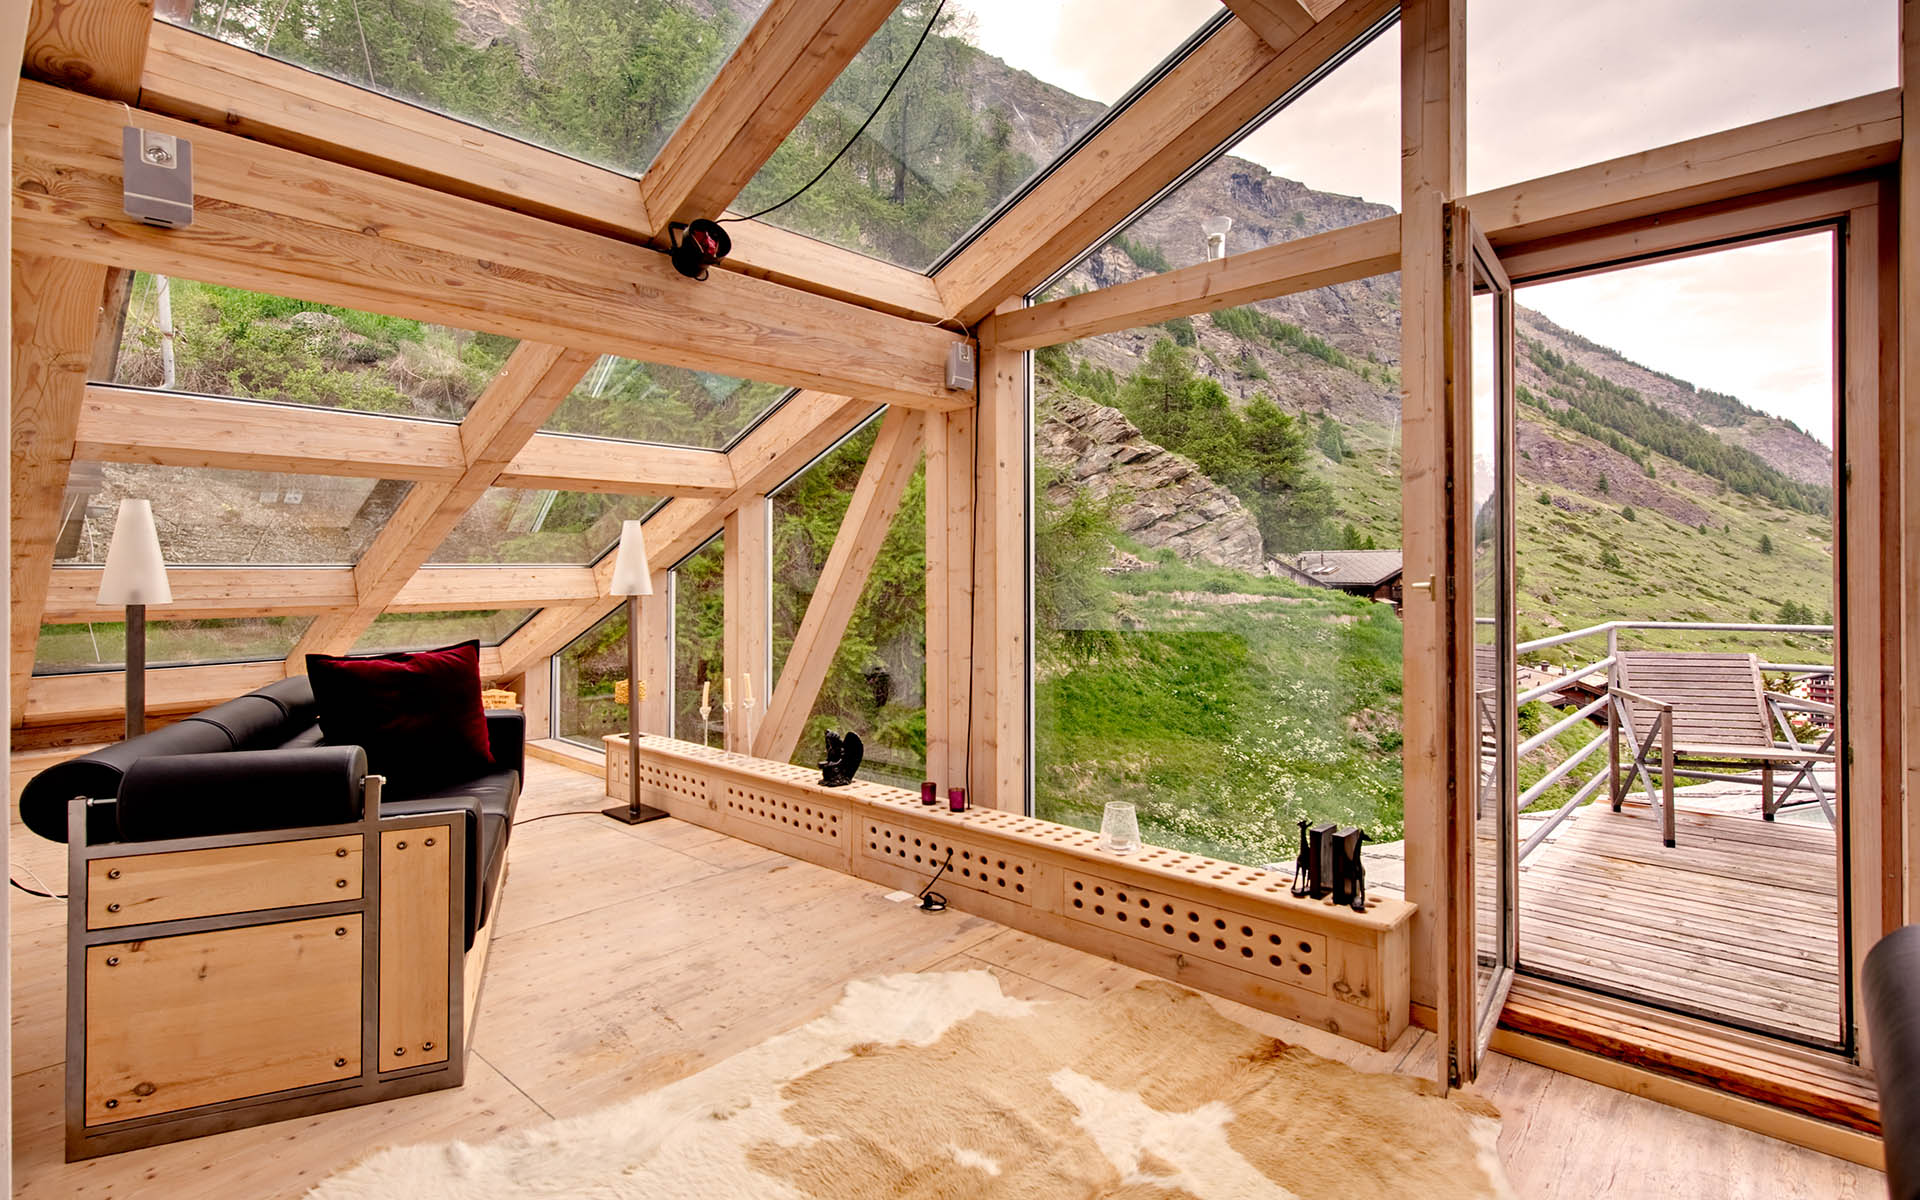 Heinz Julen Penthouse, Zermatt